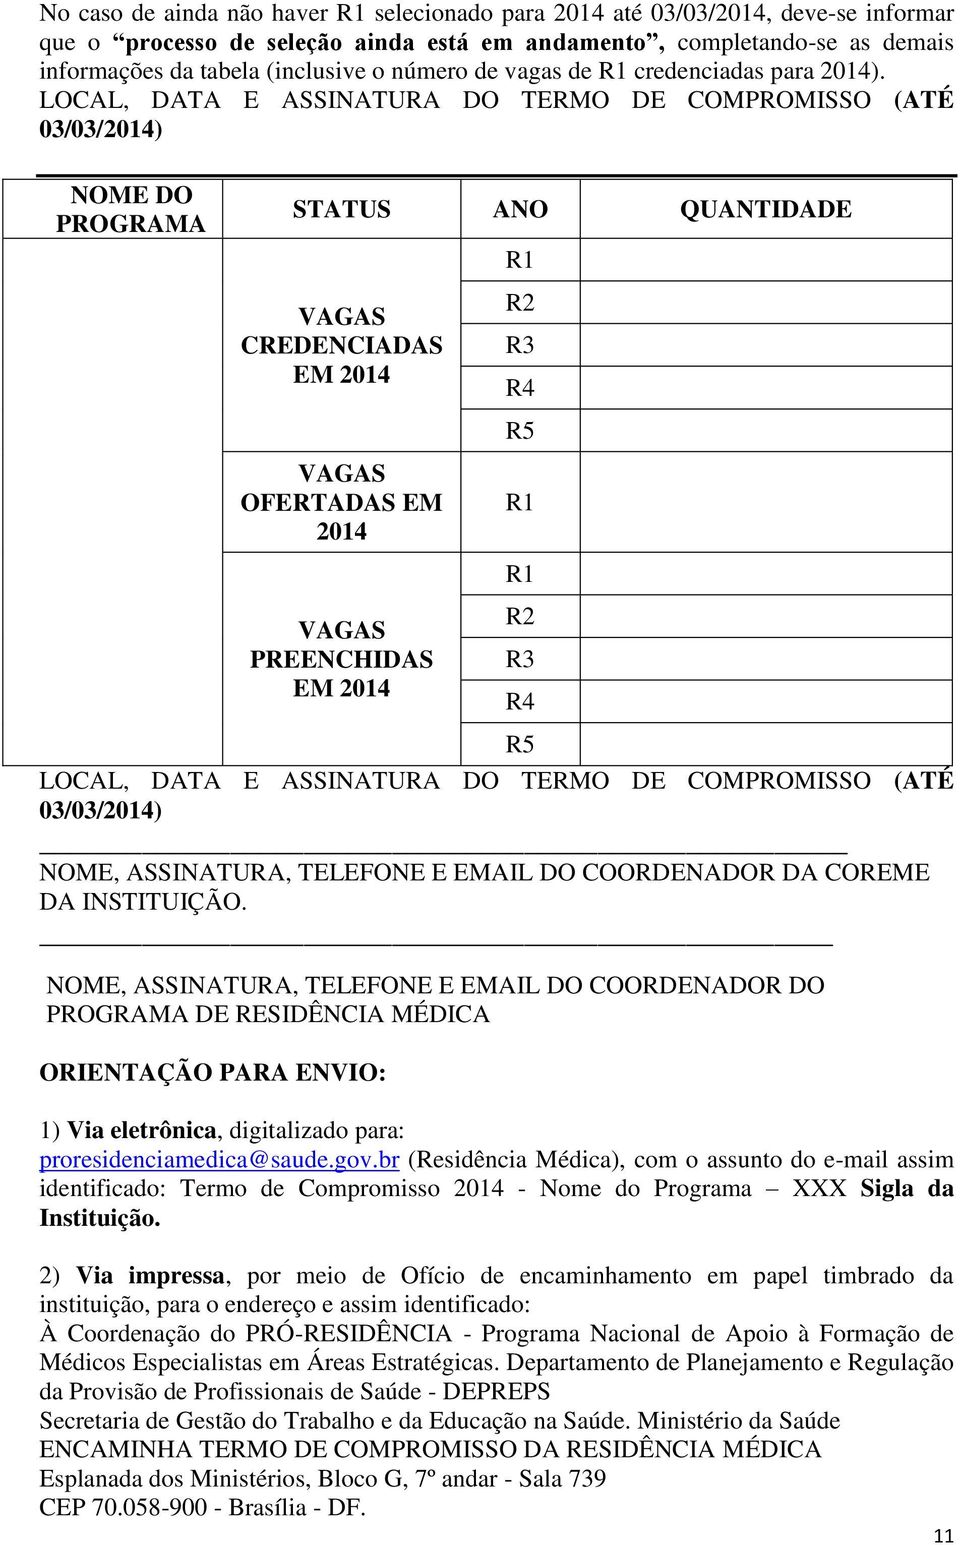 LOCAL, DATA E ASSINATURA DO TERMO DE COMPROMISSO (ATÉ 03/03/2014) NOME DO PROGRAMA LOCAL, DATA E ASSINATURA DO TERMO DE COMPROMISSO (ATÉ 03/03/2014) NOME, ASSINATURA, TELEFONE E EMAIL DO COORDENADOR